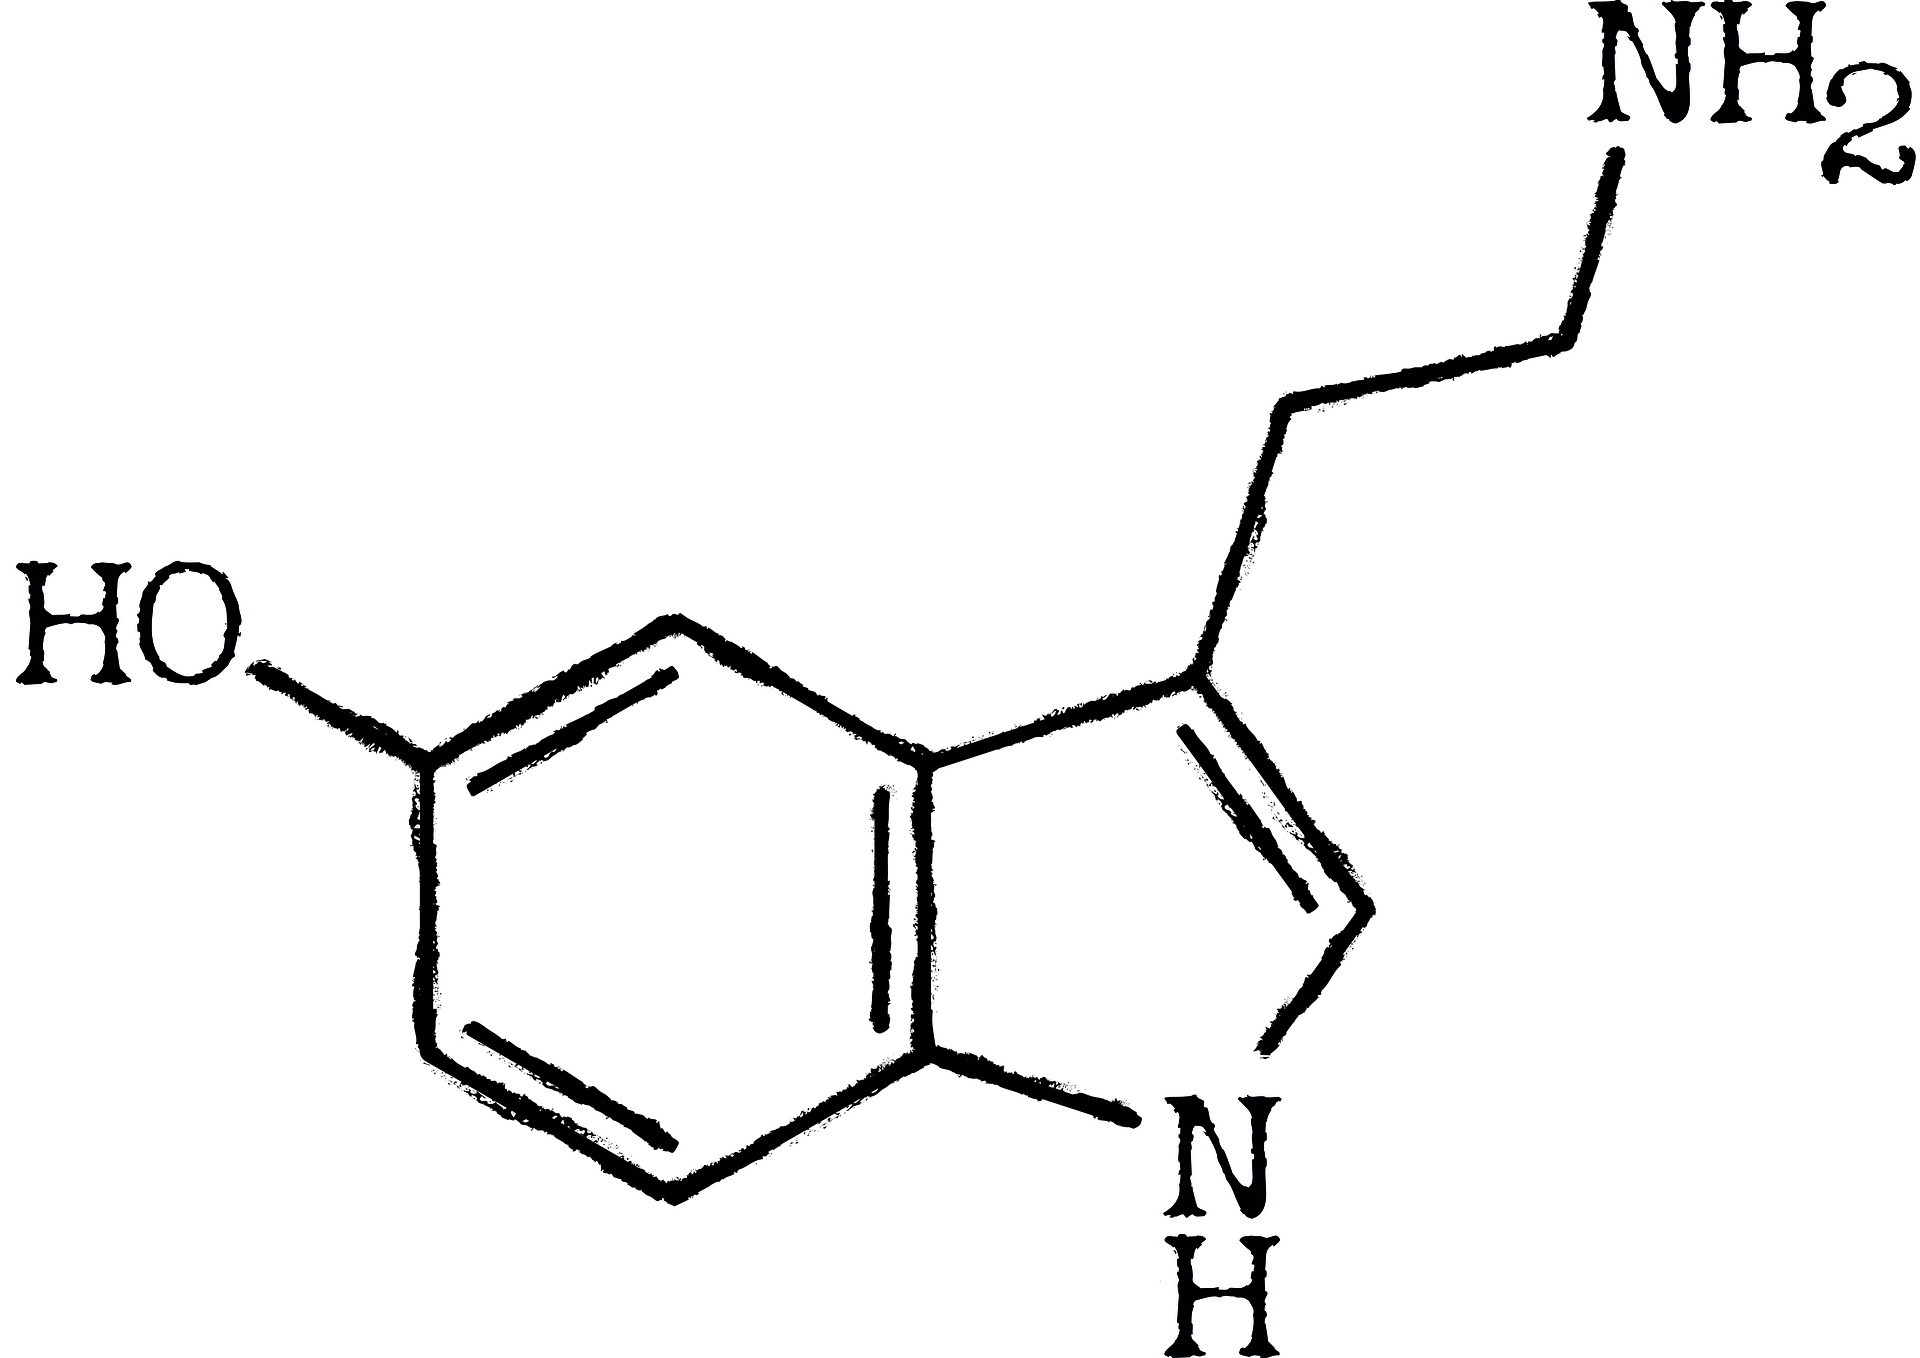 A serotonin molecule